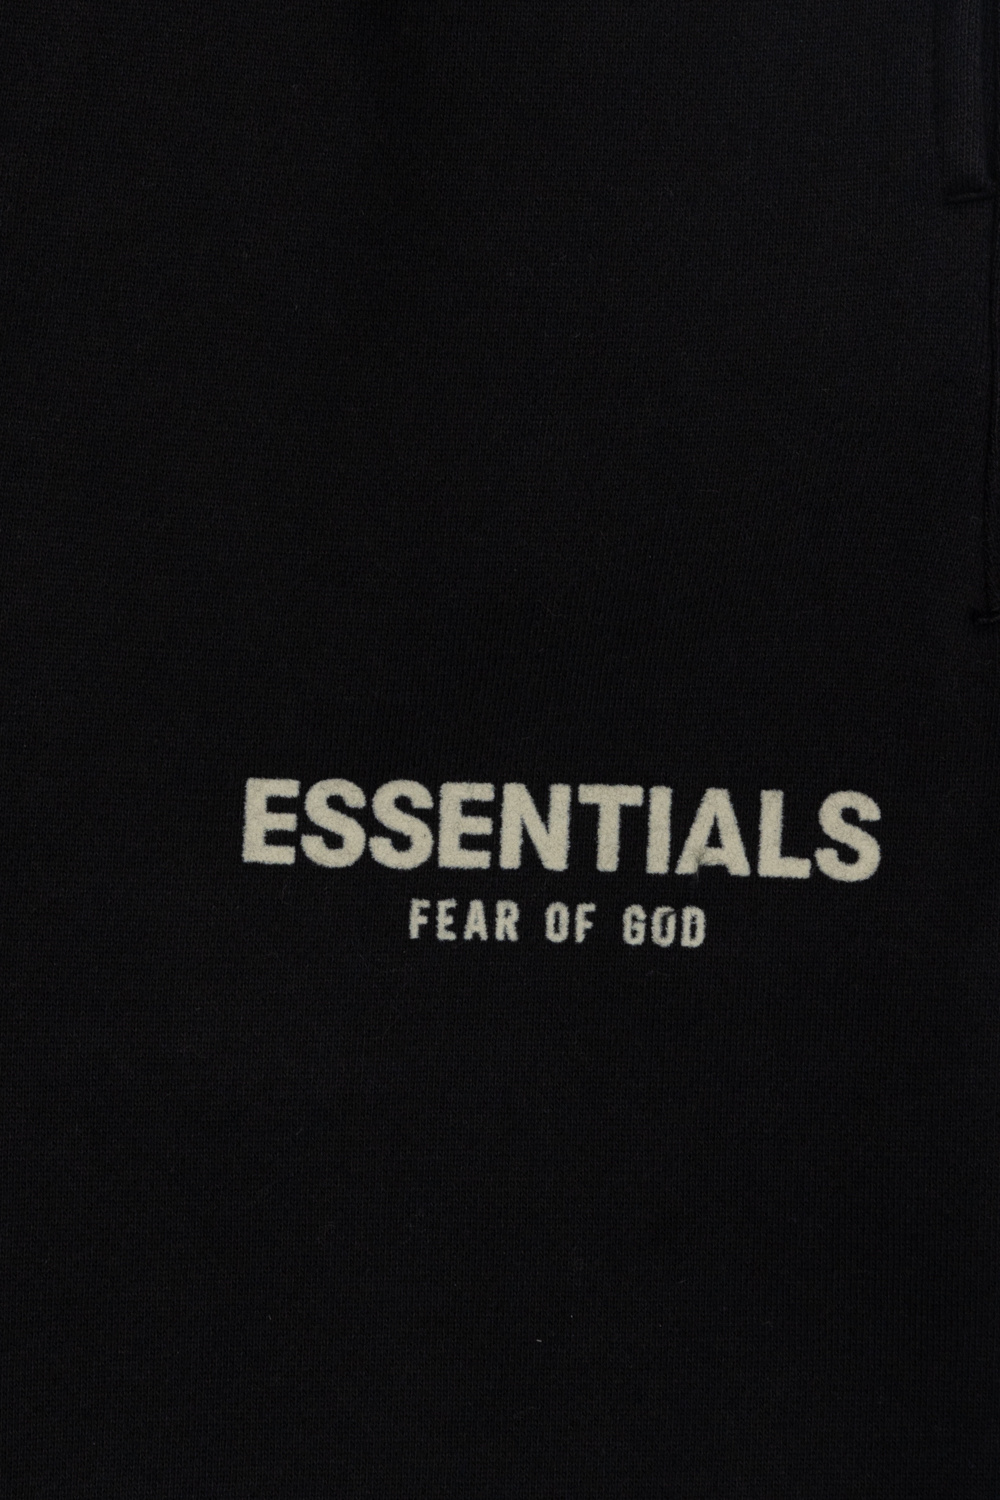 Fear Of God Essentials Kids dip dye bottom shorts teens